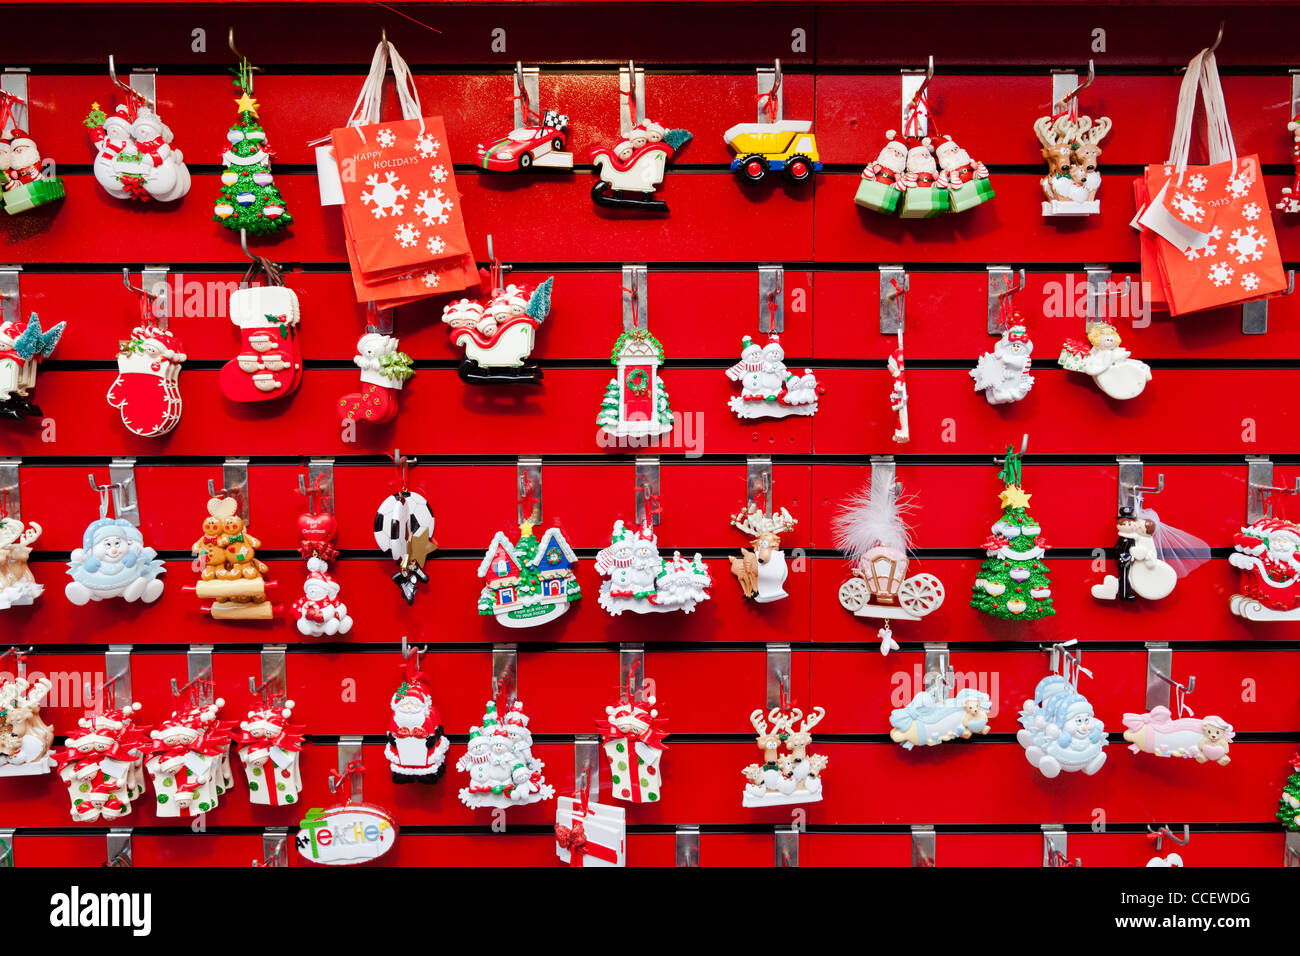 Giảm giá sales on christmas decorations đến 50% cho trang trí Giáng sinh